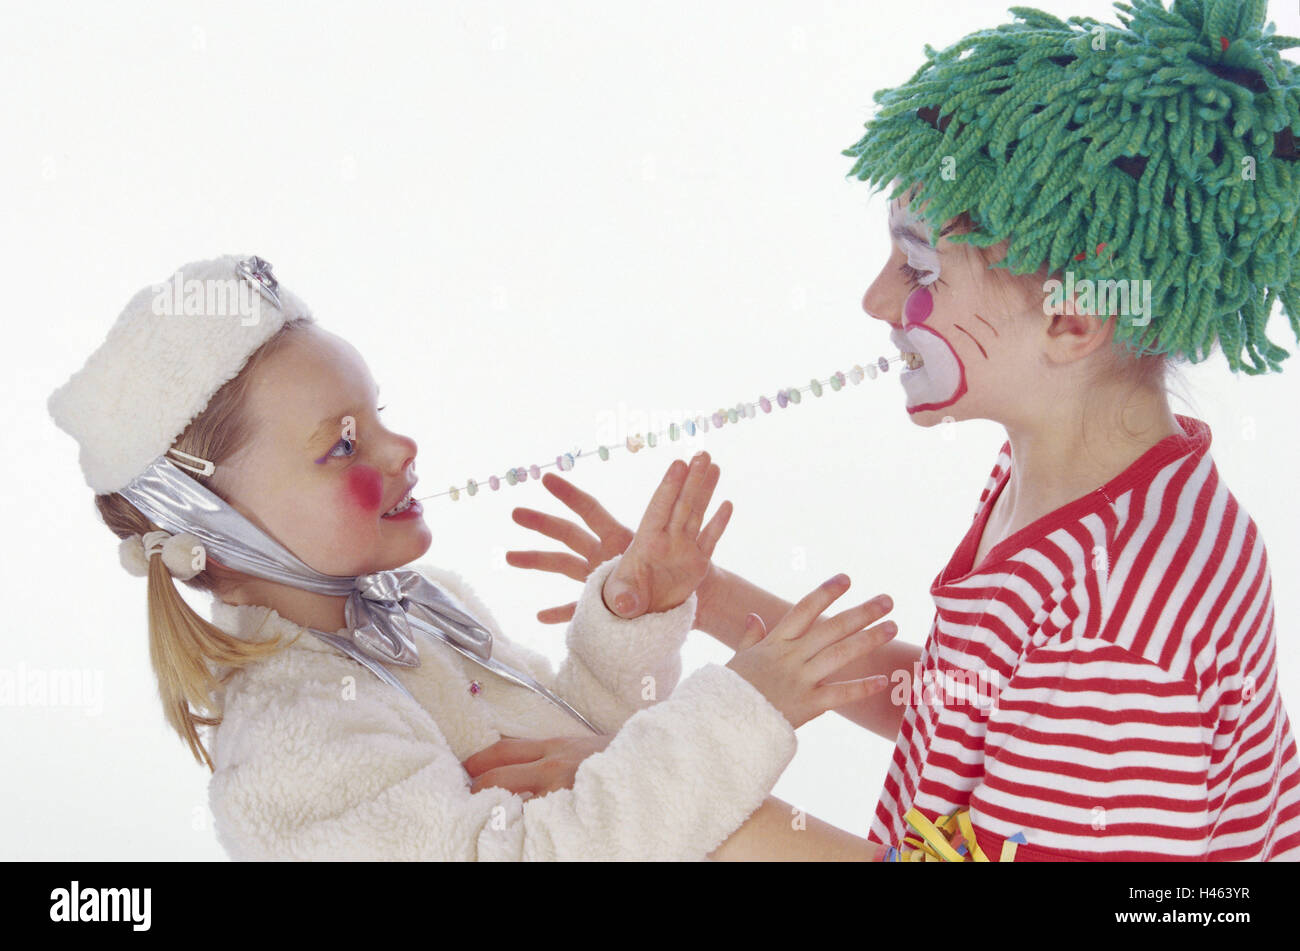 Le carnaval, les enfants, deux, déguisement, costumes, clown, princesse de glace, des bonbons, de la chaîne d'alimentation, partage, en face, Banque D'Images